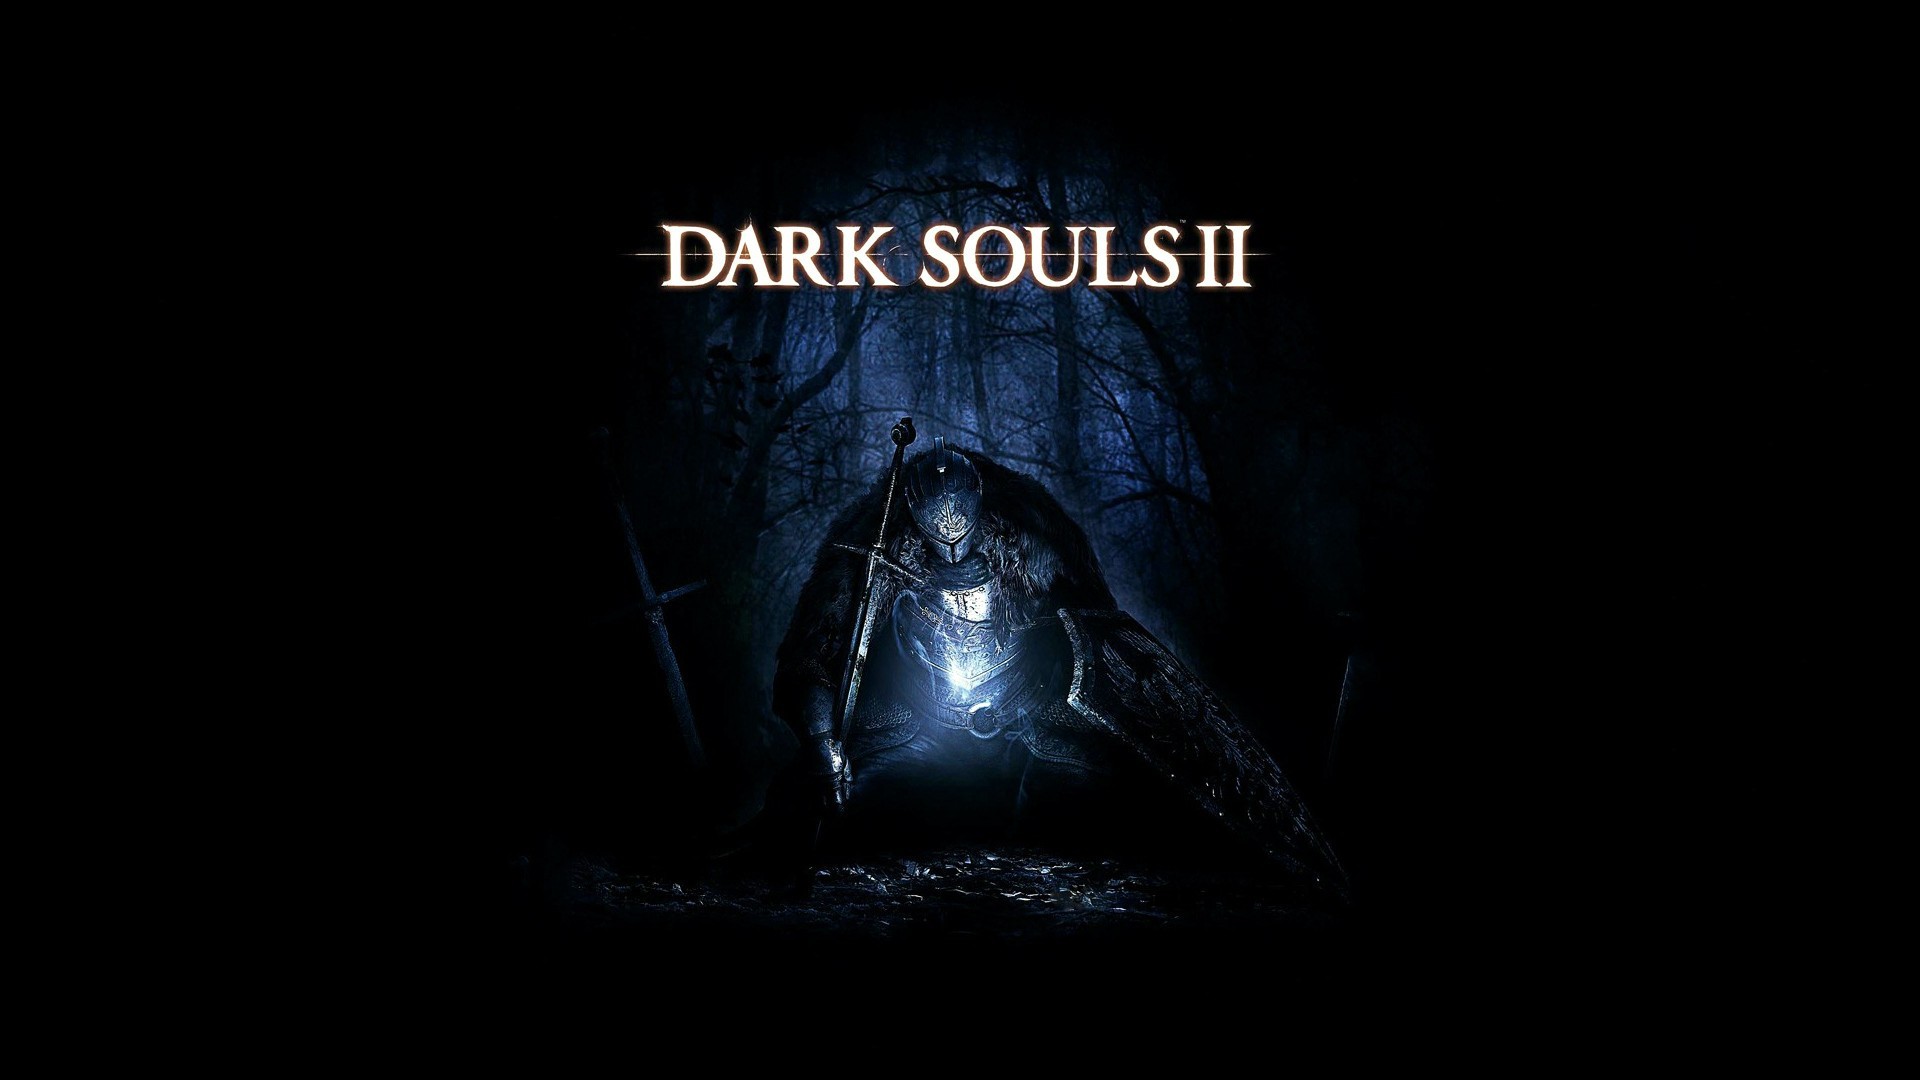 Puter Game Dark Souls Wallpaper And Image